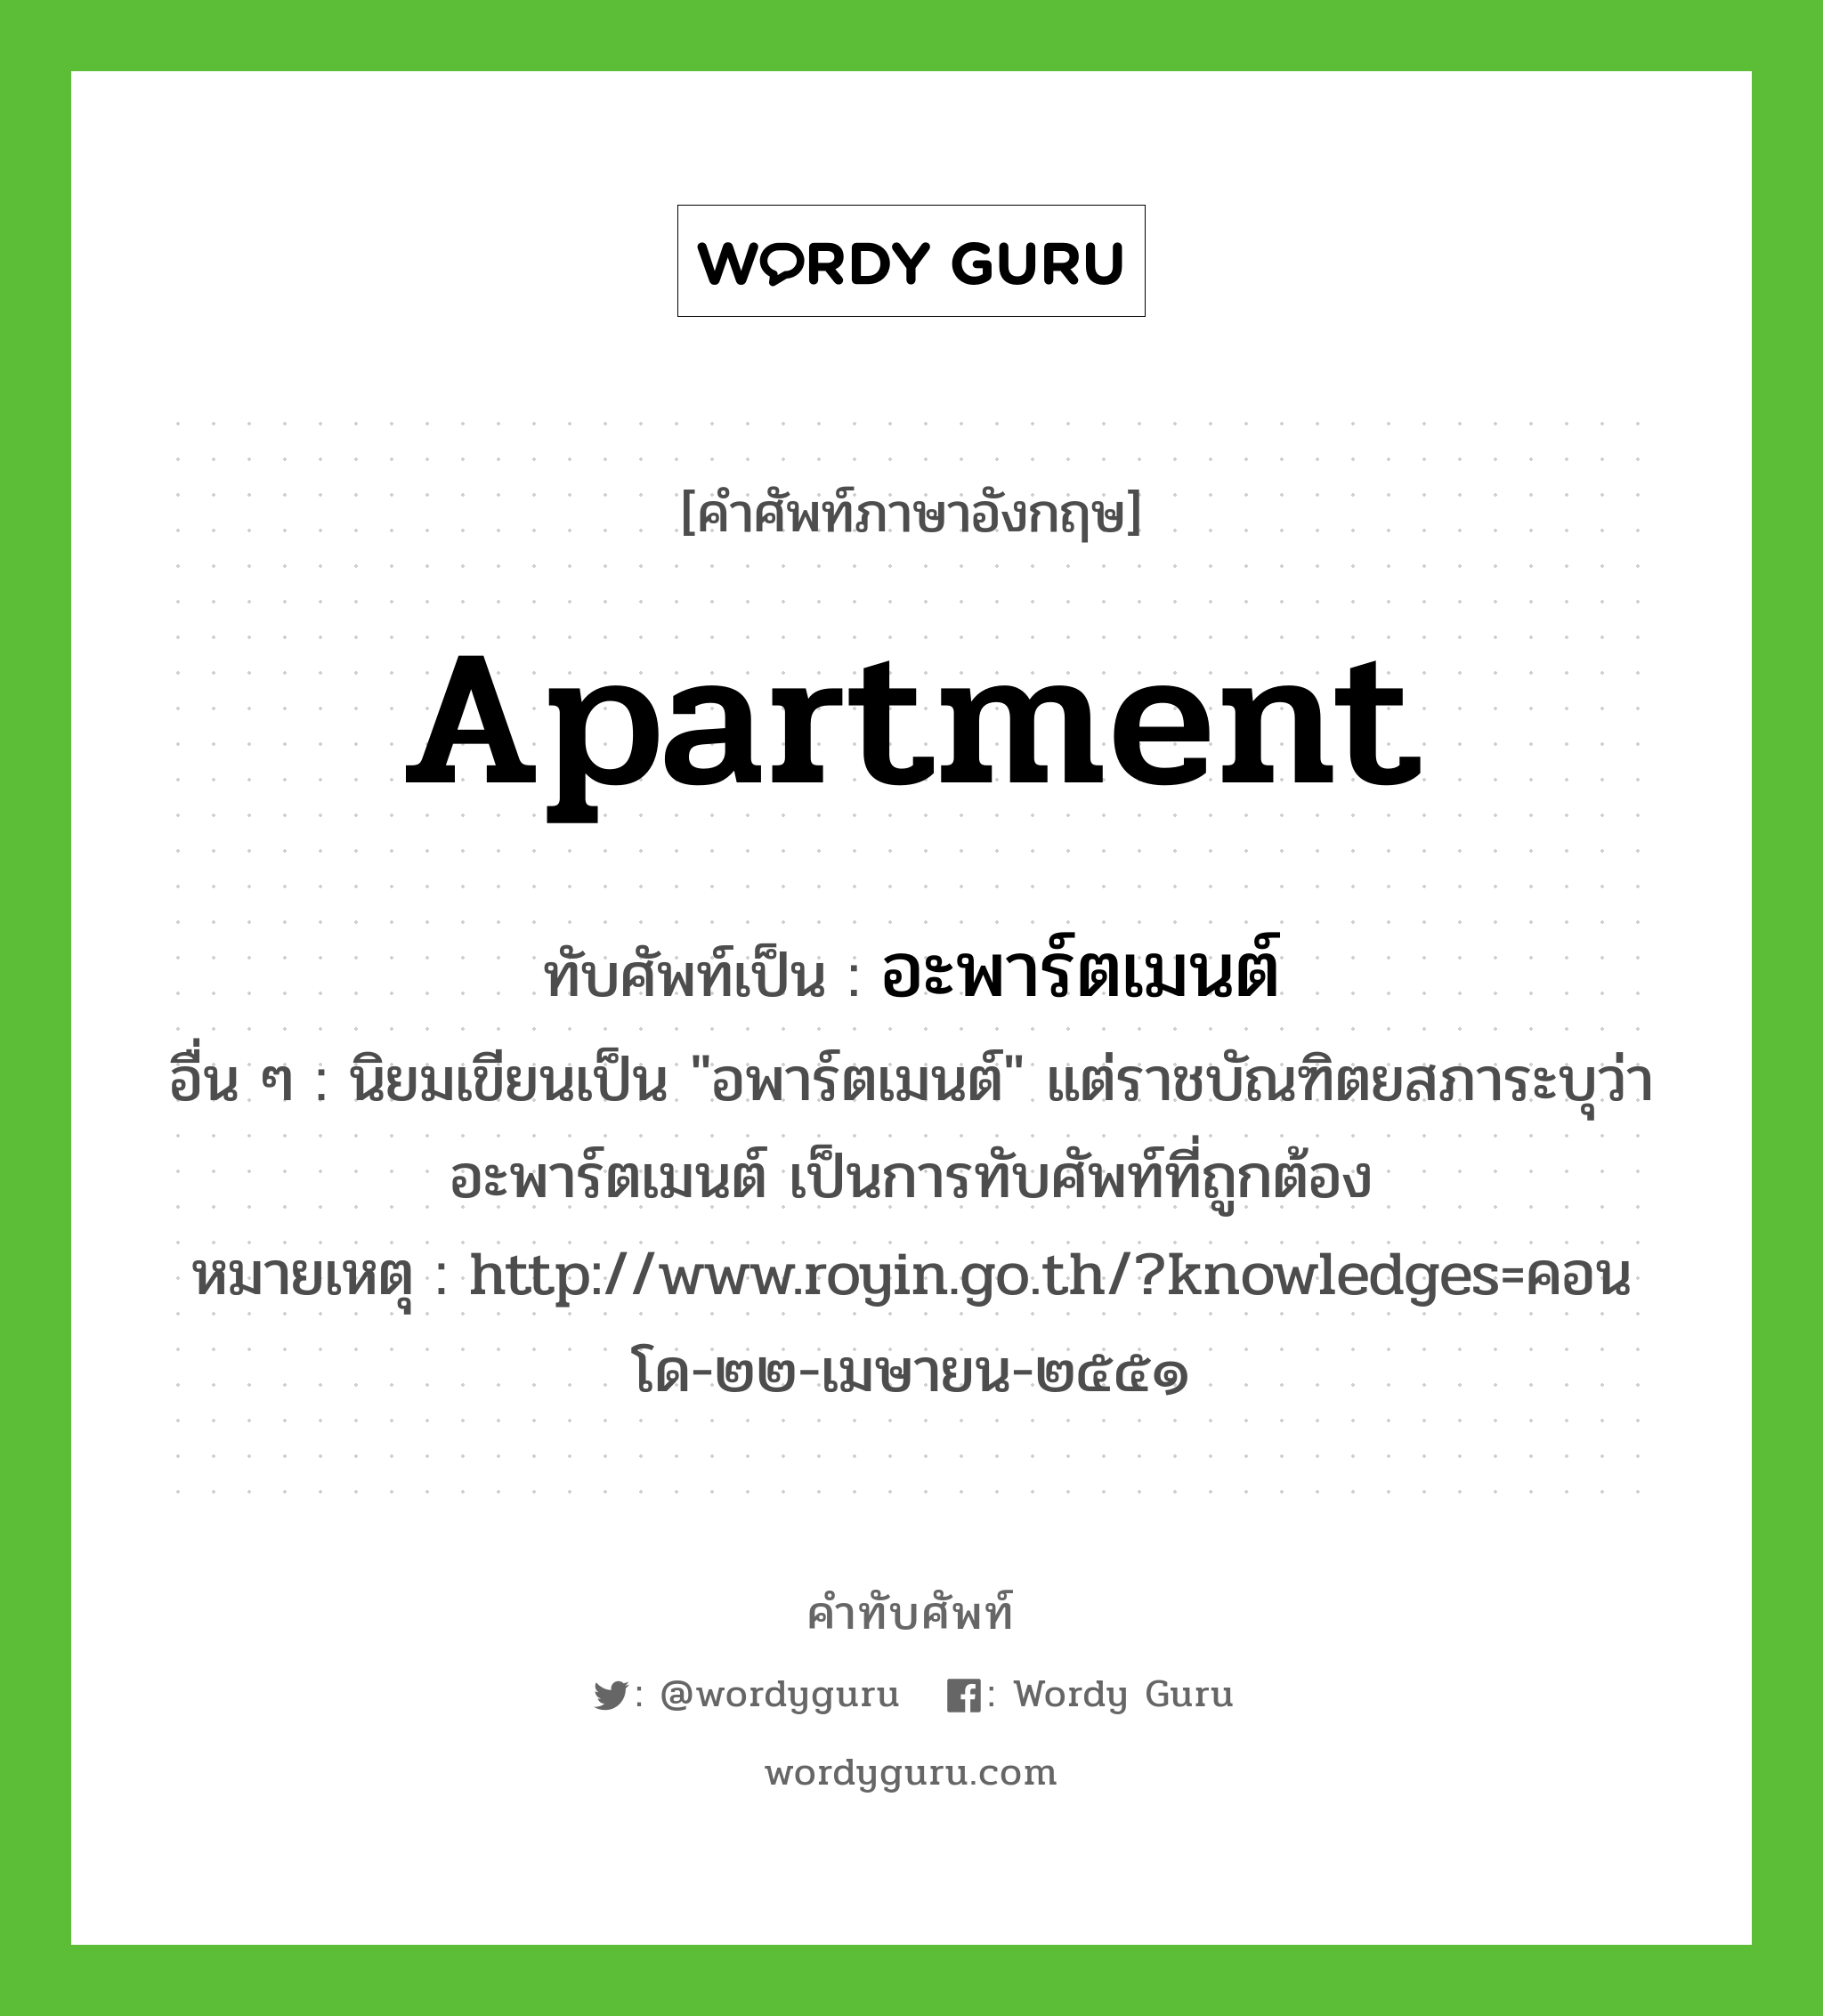 apartment เขียนเป็นคำไทยว่าอะไร?, คำศัพท์ภาษาอังกฤษ apartment ทับศัพท์เป็น อะพาร์ตเมนต์ อื่น ๆ นิยมเขียนเป็น "อพาร์ตเมนต์" แต่ราชบัณฑิตยสภาระบุว่า อะพาร์ตเมนต์ เป็นการทับศัพท์ที่ถูกต้อง หมายเหตุ http://www.royin.go.th/?knowledges=คอนโด-๒๒-เมษายน-๒๕๕๑